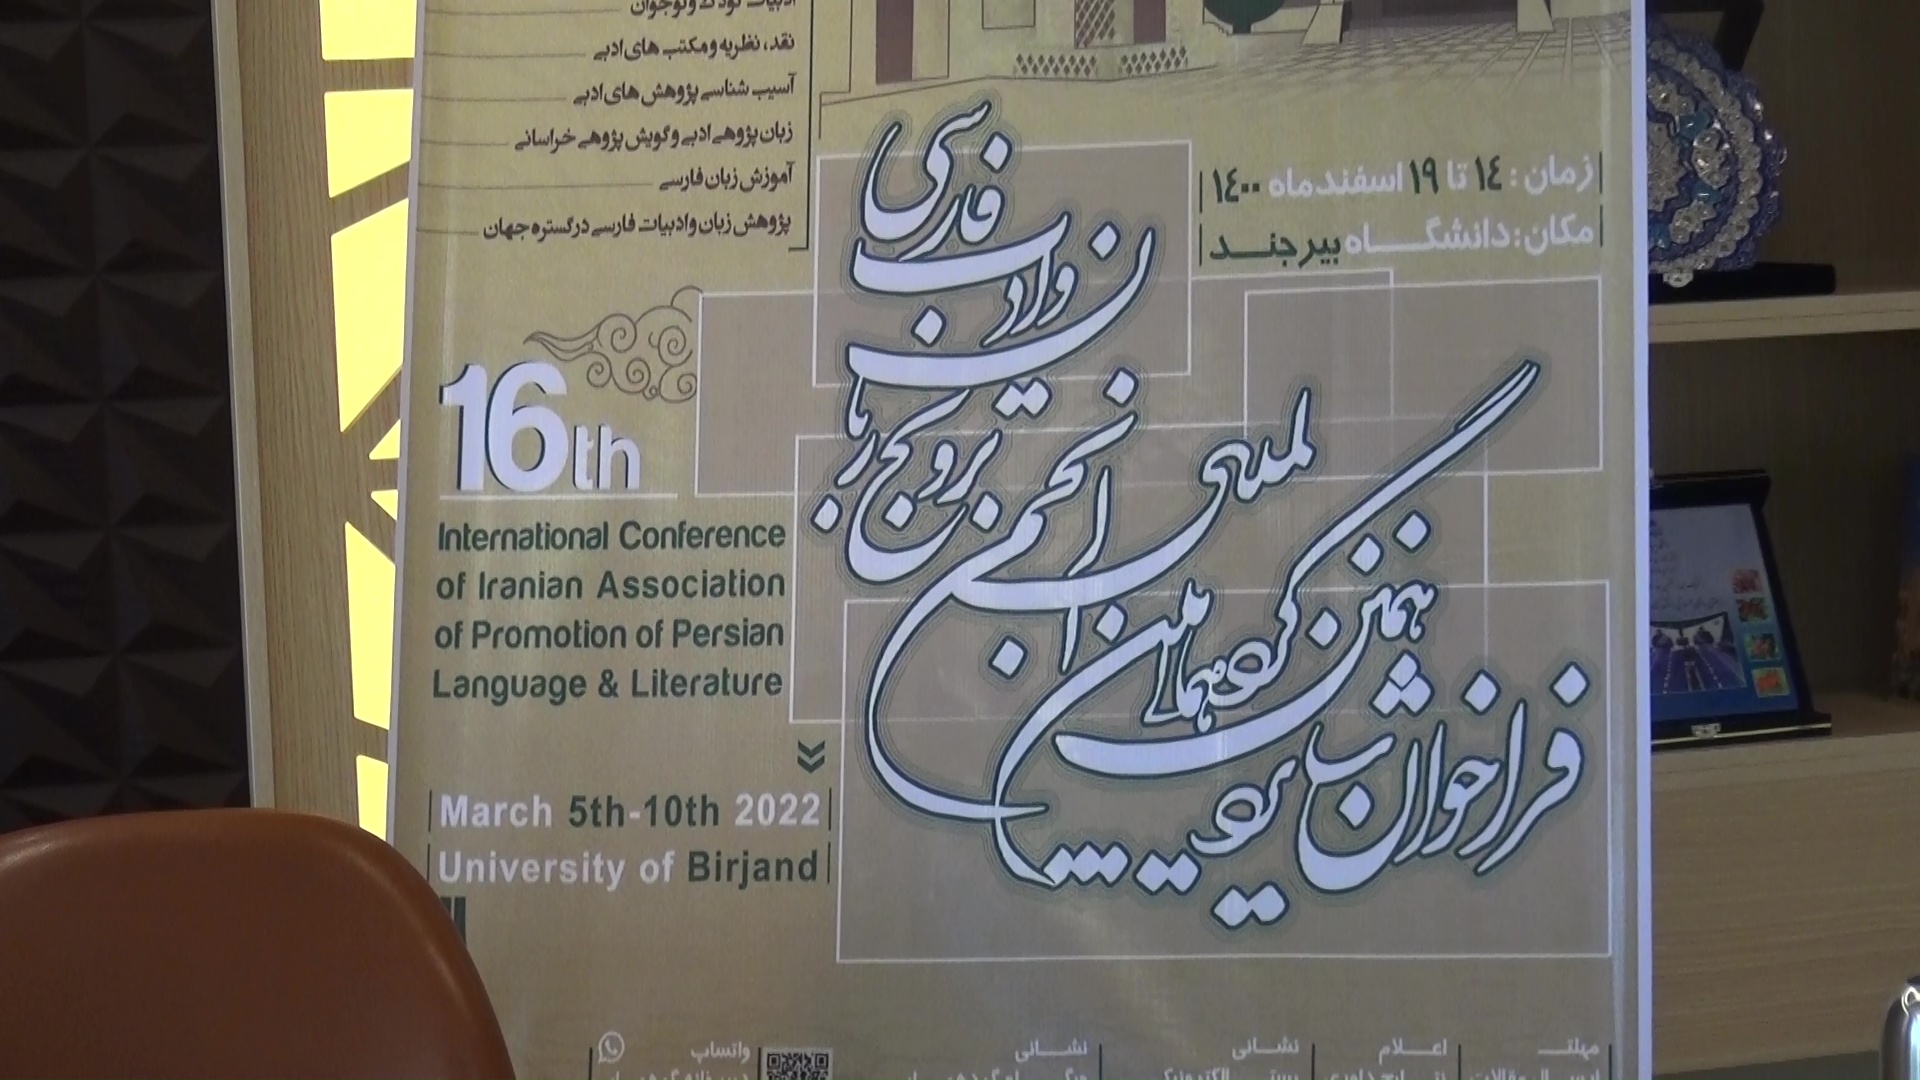 برگزاری شانزدهمین گردهمایی بین المللی انجمن ترویج زبان و ادب فارسی